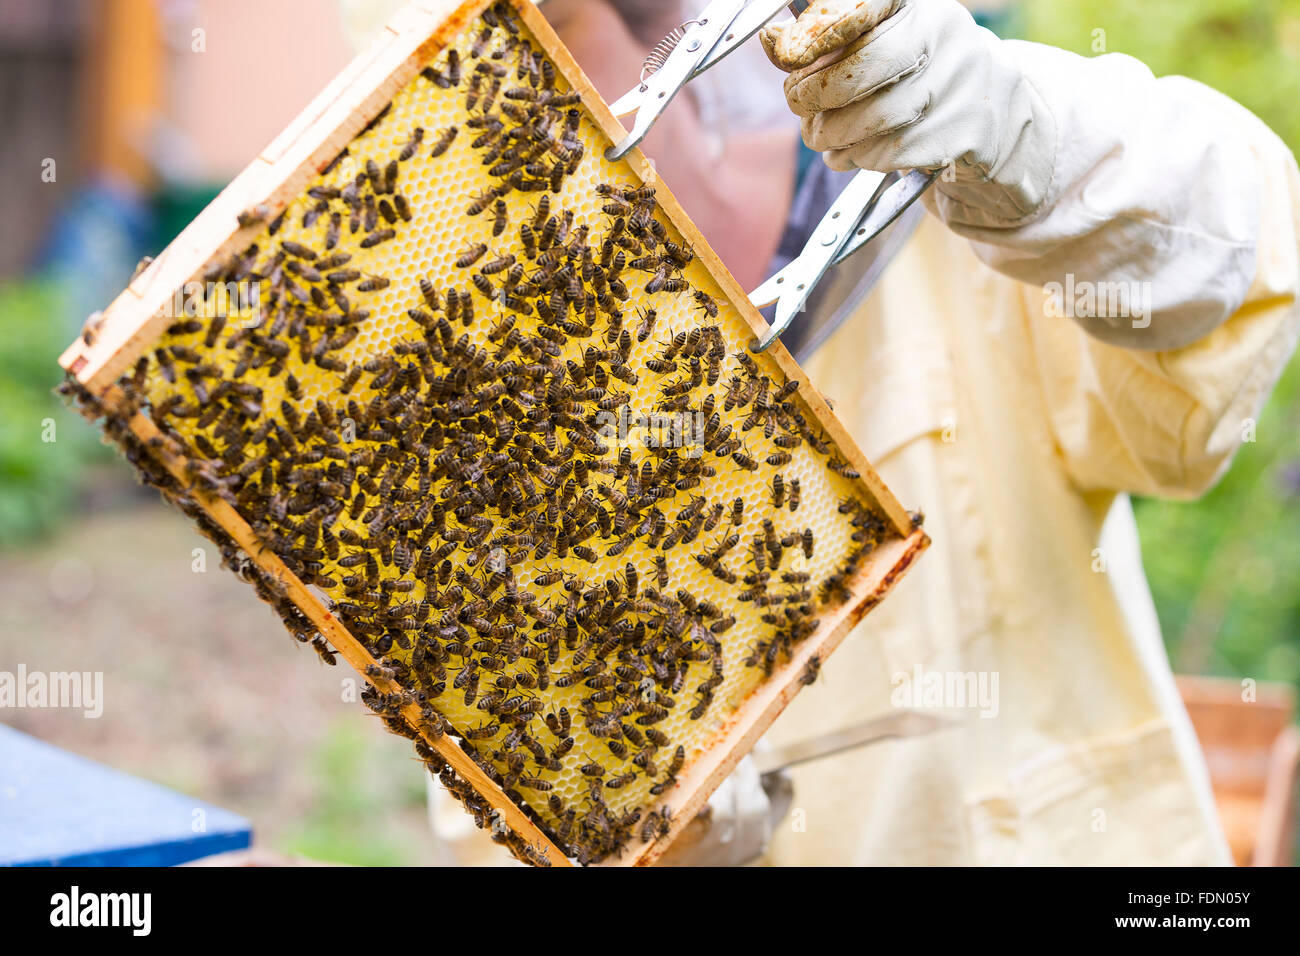 Ou européenne'abeille à miel (Apis mellifera), la tenue d'apiculteur, abeilles sur honeycomb, Allemagne Banque D'Images